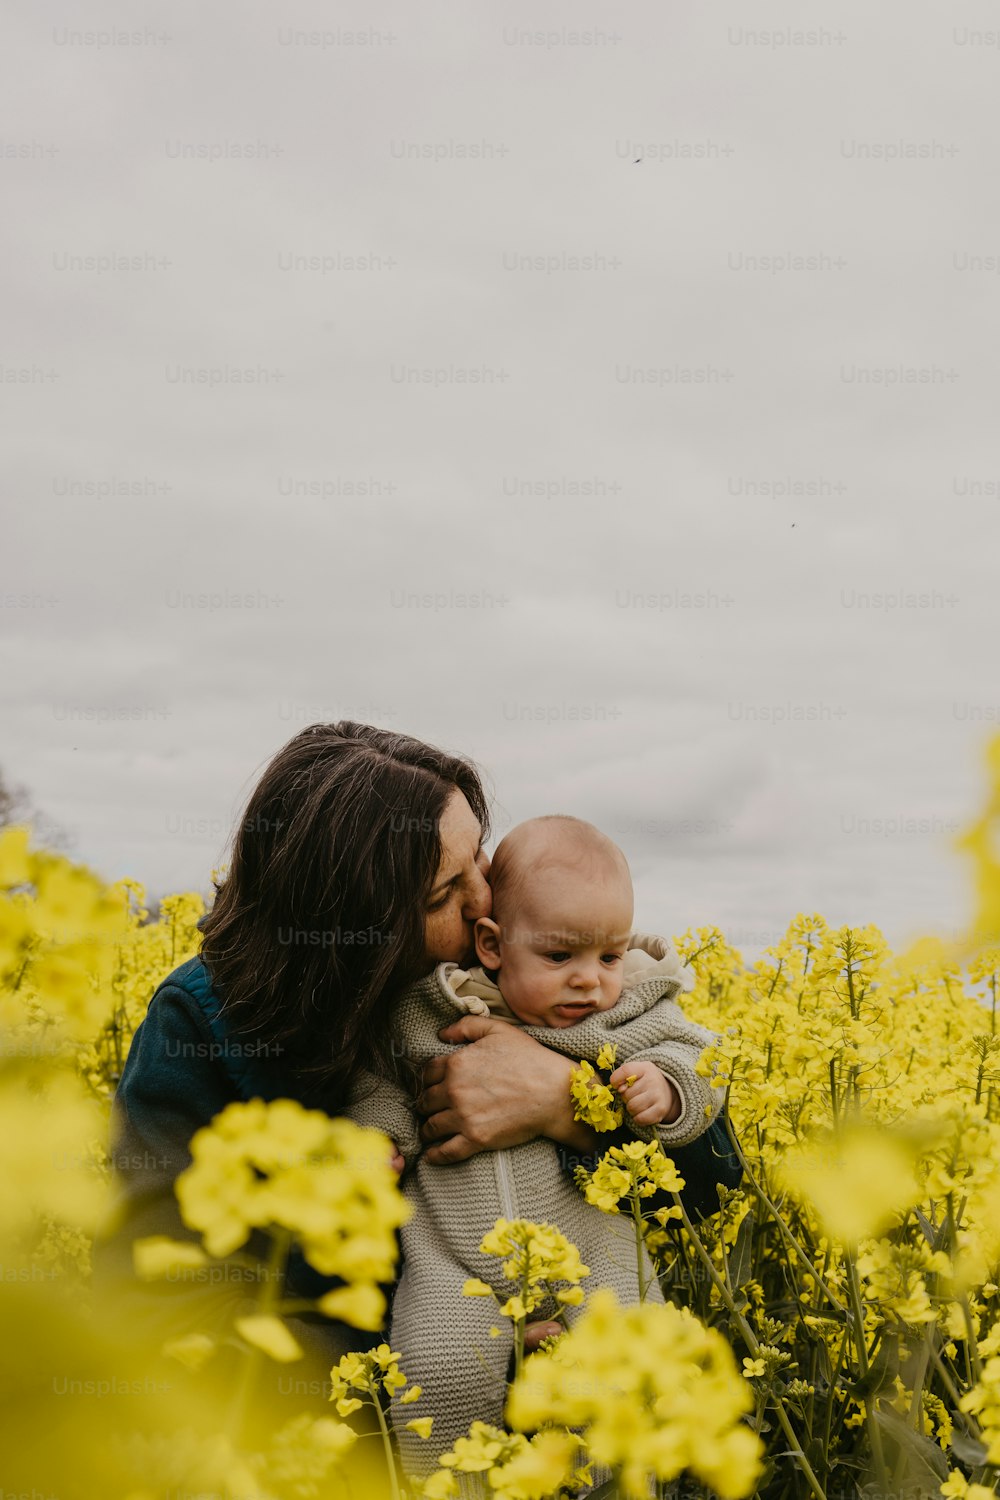 노란 꽃밭에서 아기를 안고 있는 여자